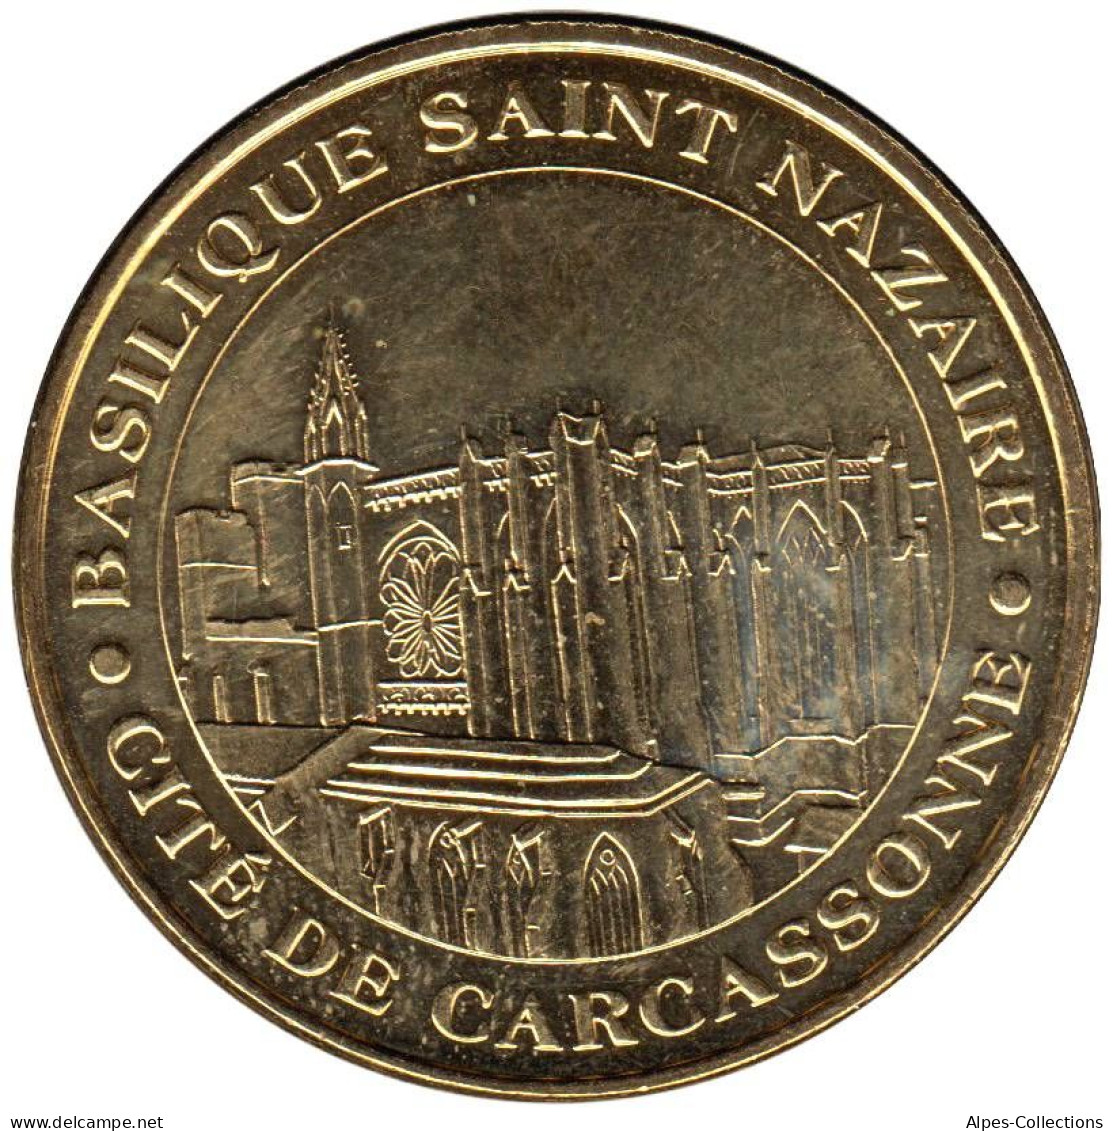 11-0016 - JETON TOURISTIQUE MDP - Basilique Saint-Nazaire - Carcassonne - 2010.1 - 2010